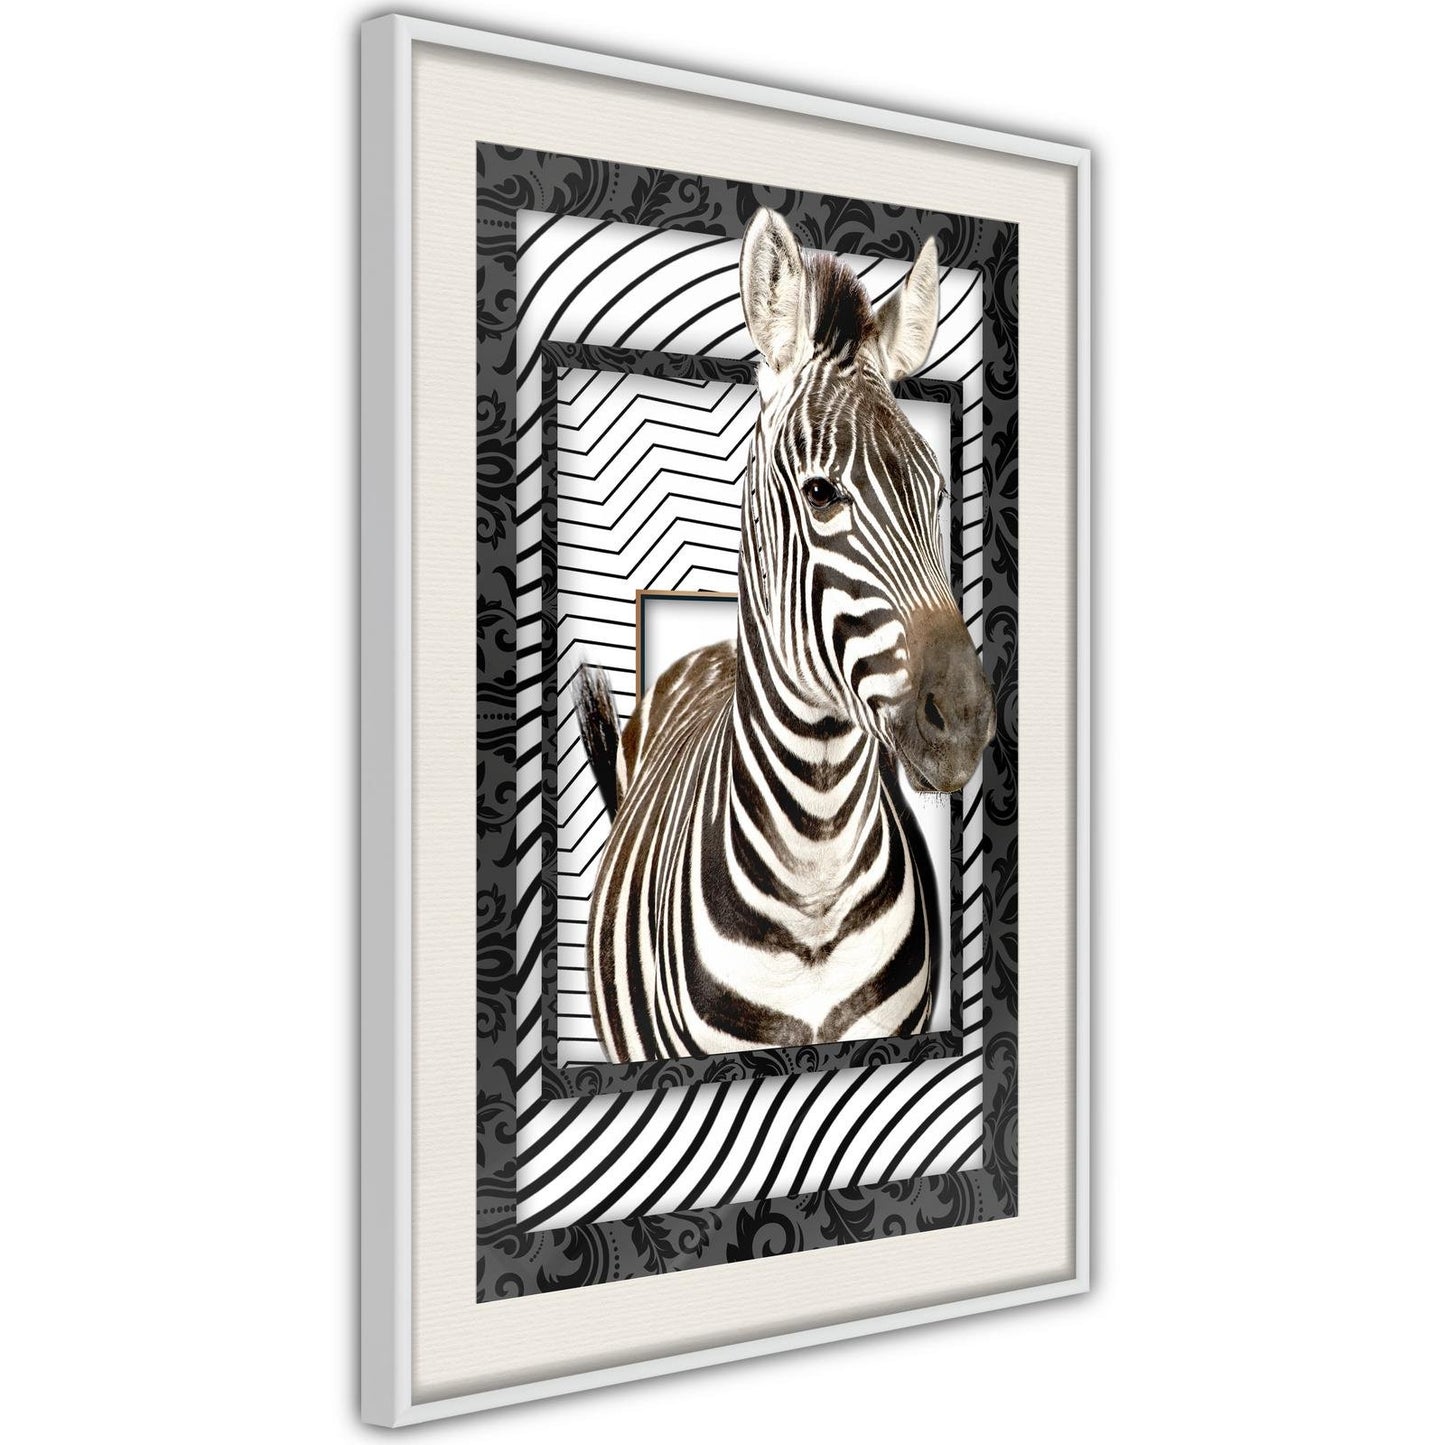 Zebra in the Frame